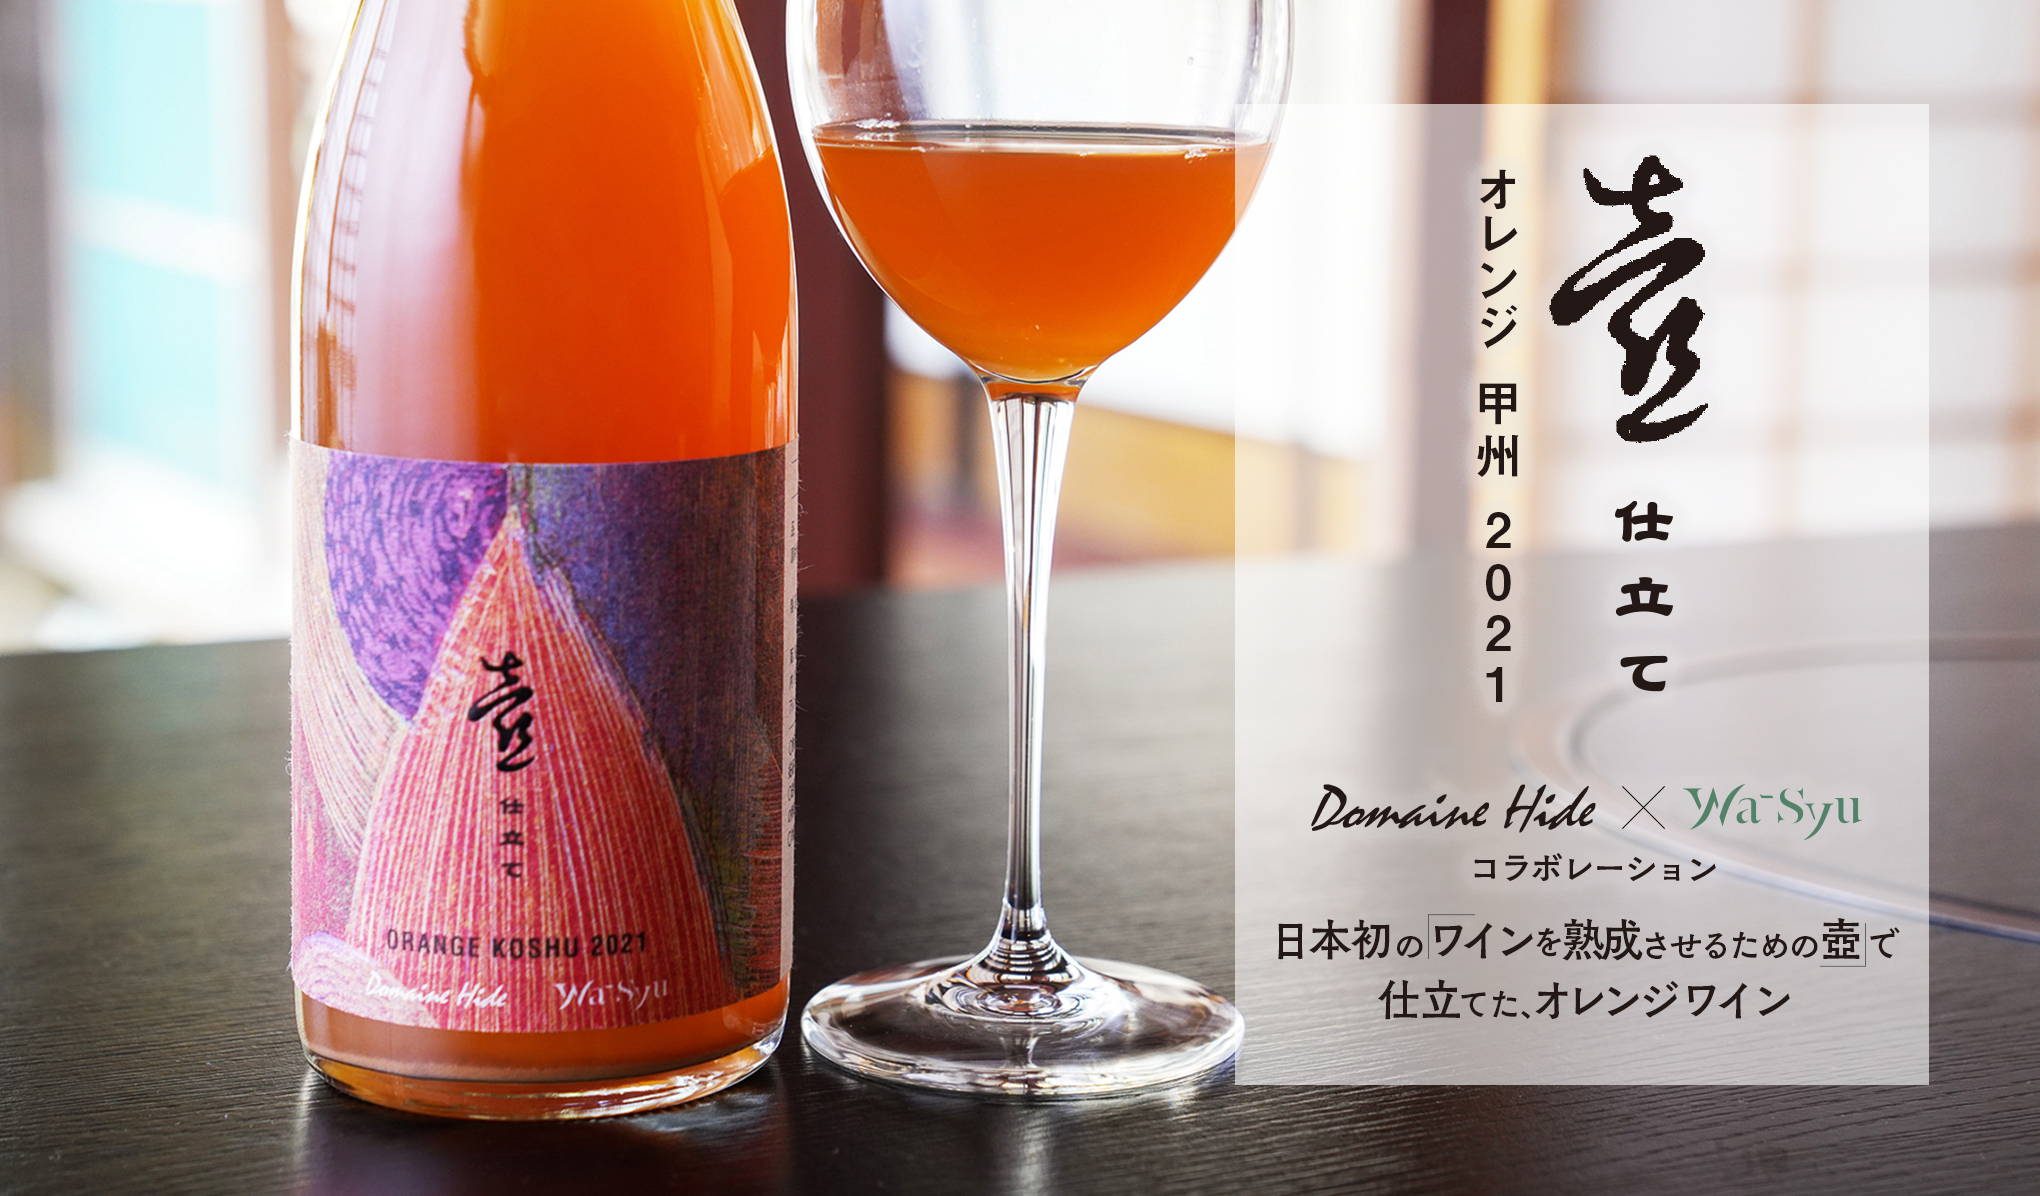 日本初の「ワインを熟成させるための壺」で仕立てた、オレンジワイン